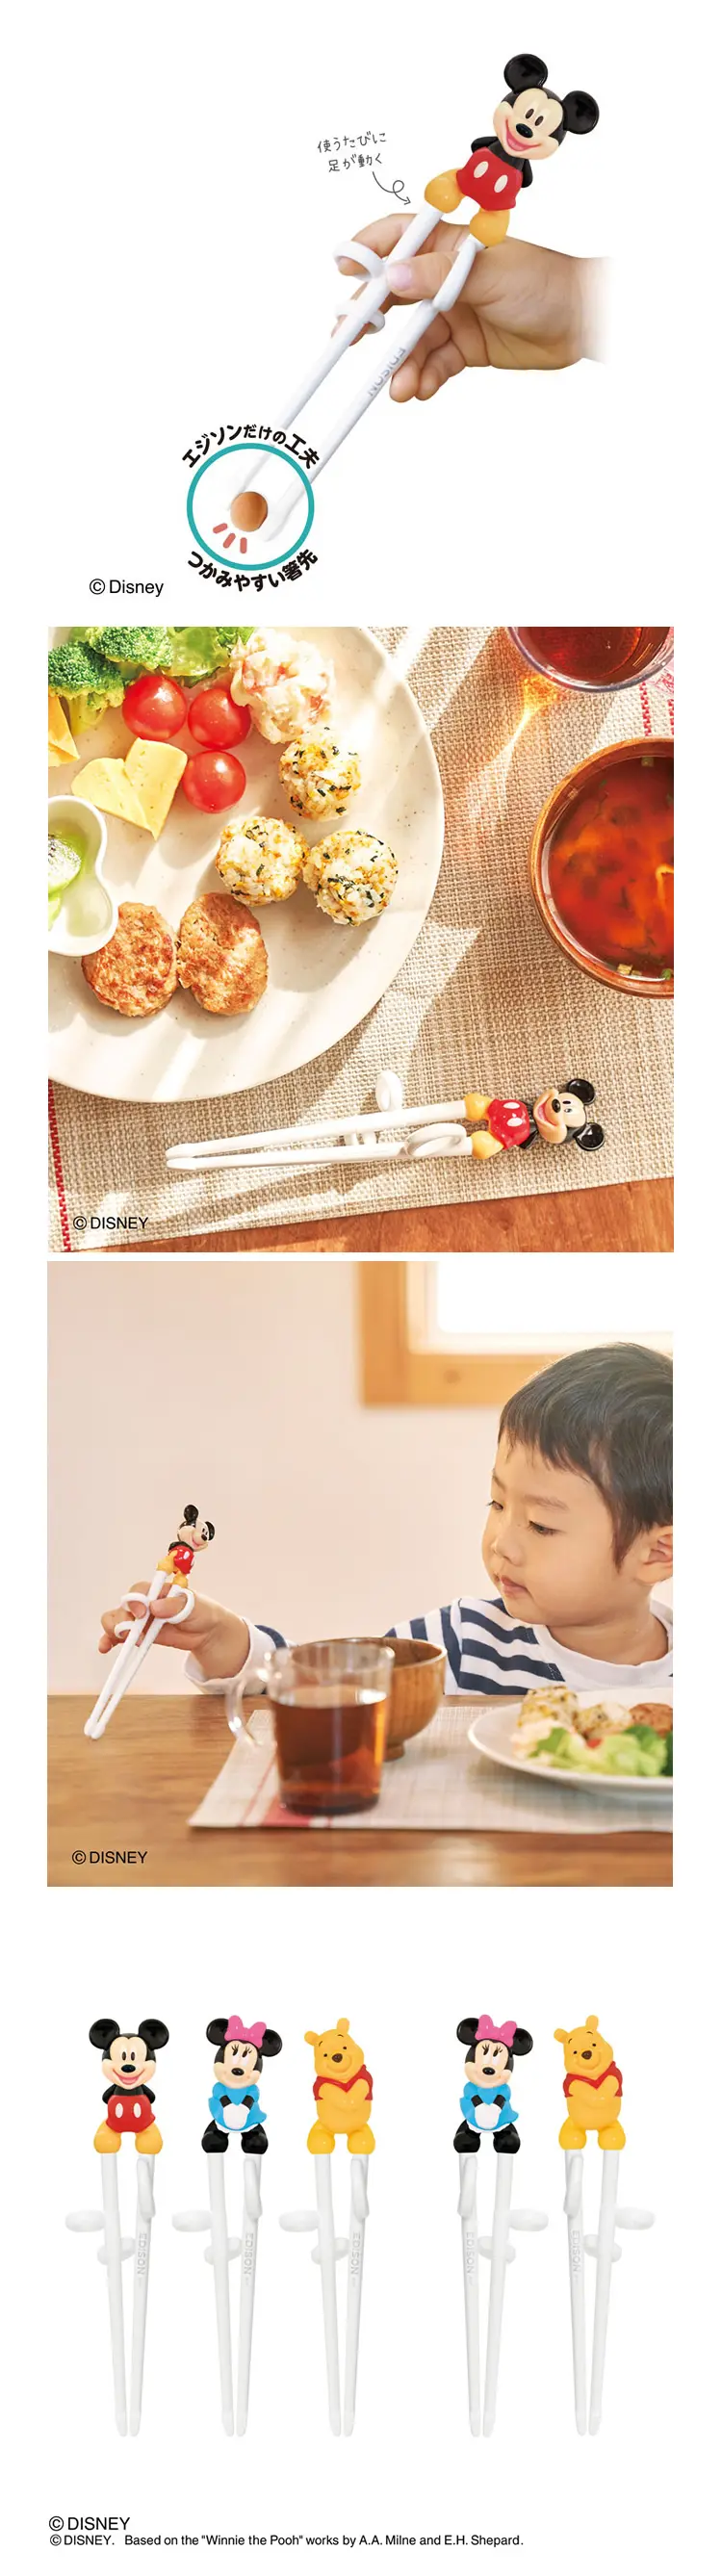 Edison 學習筷子(右手用)-米妮